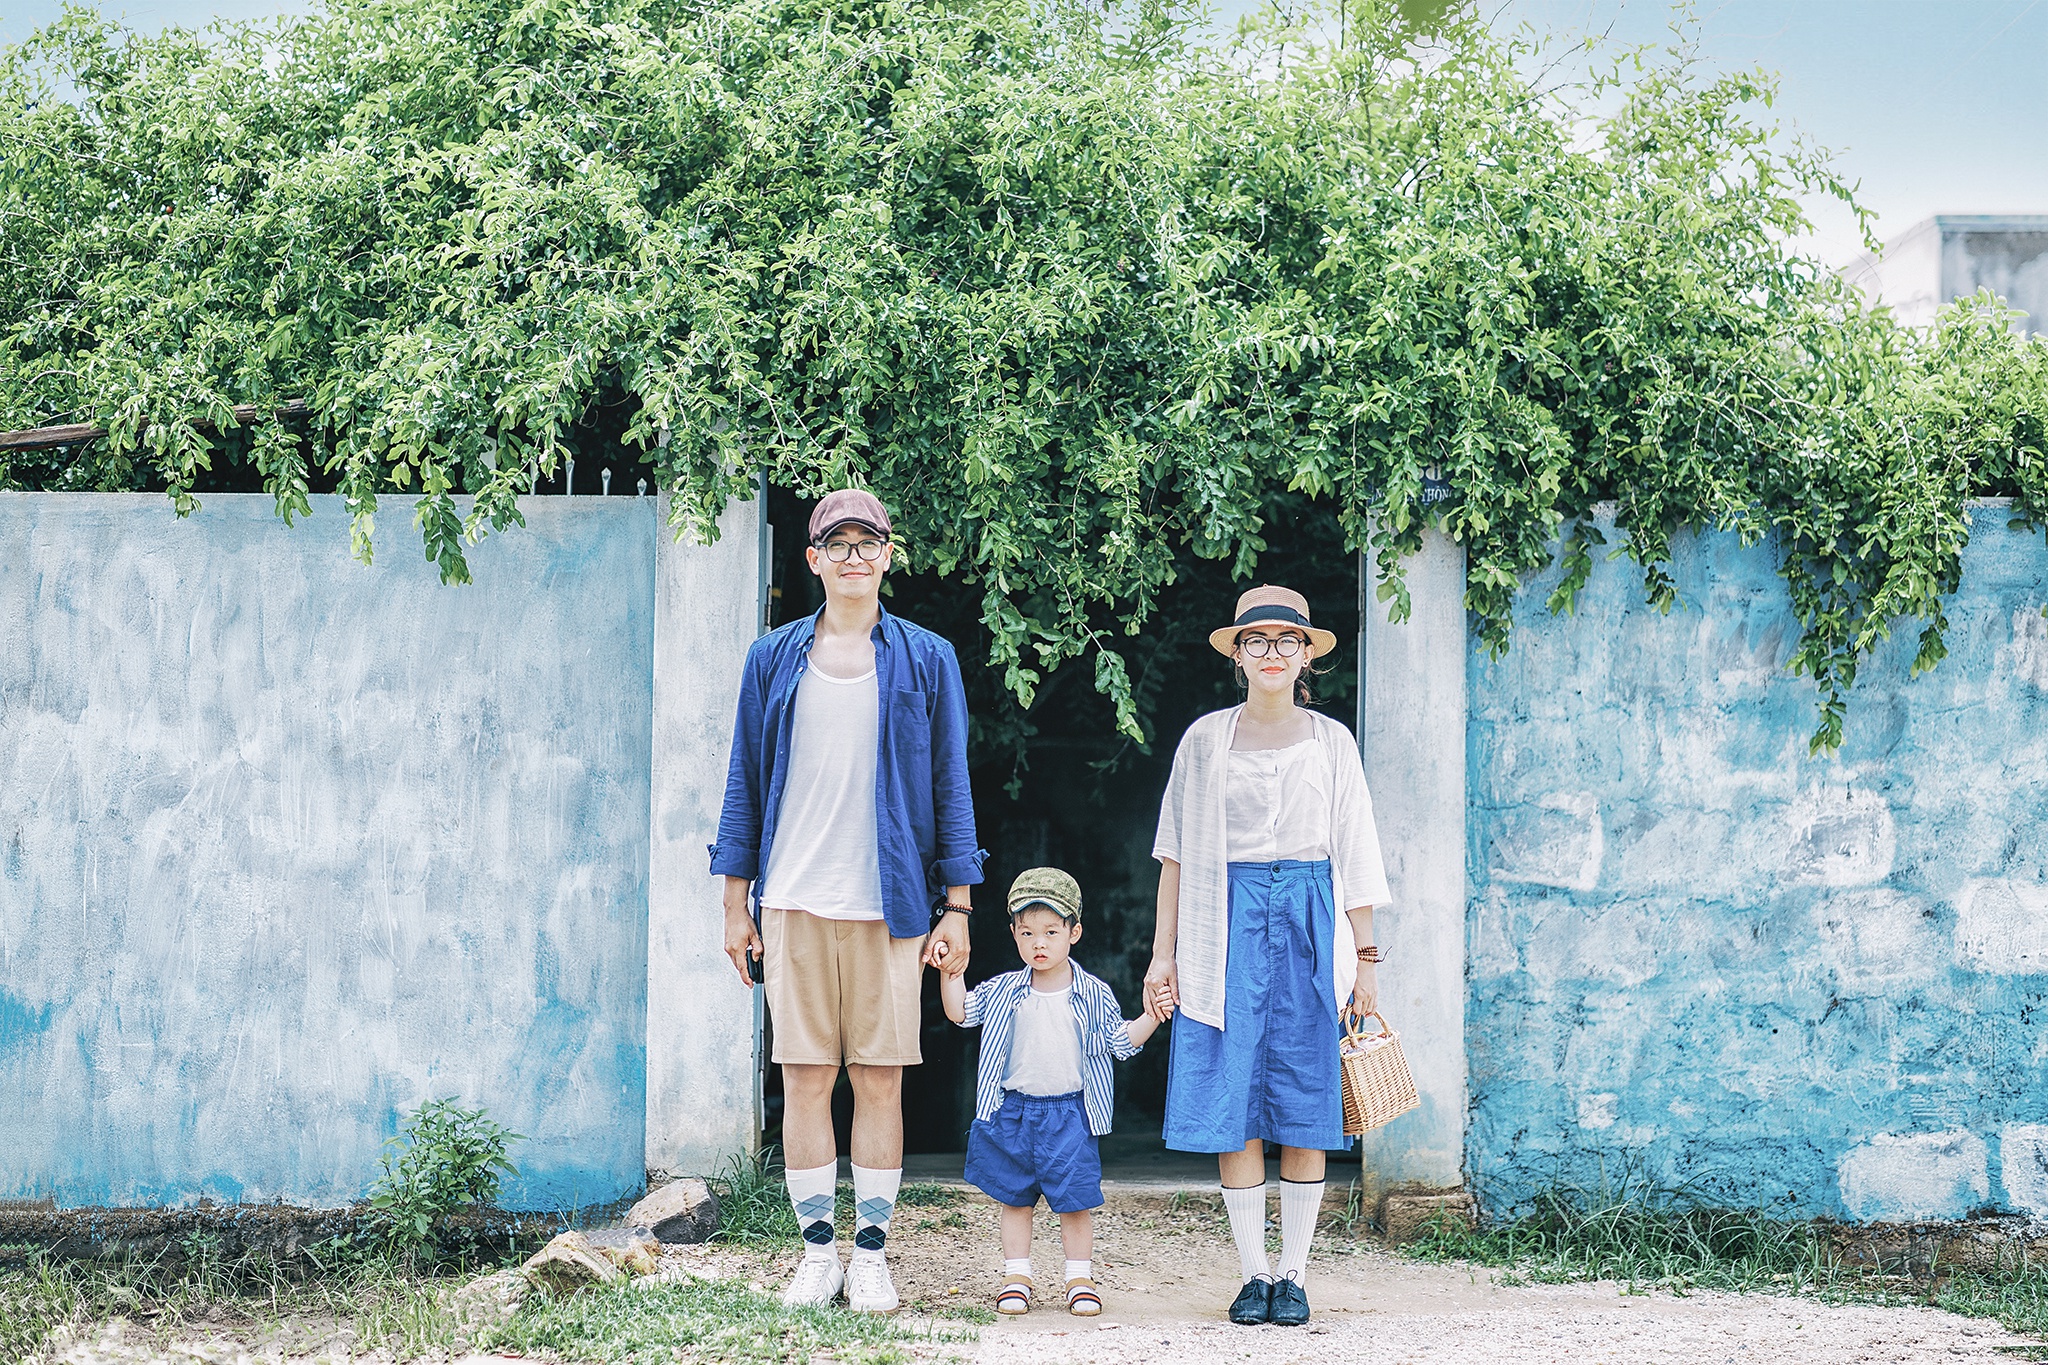 Bình Thuận xanh ngắt trong ảnh du lịch gia đình 3 người